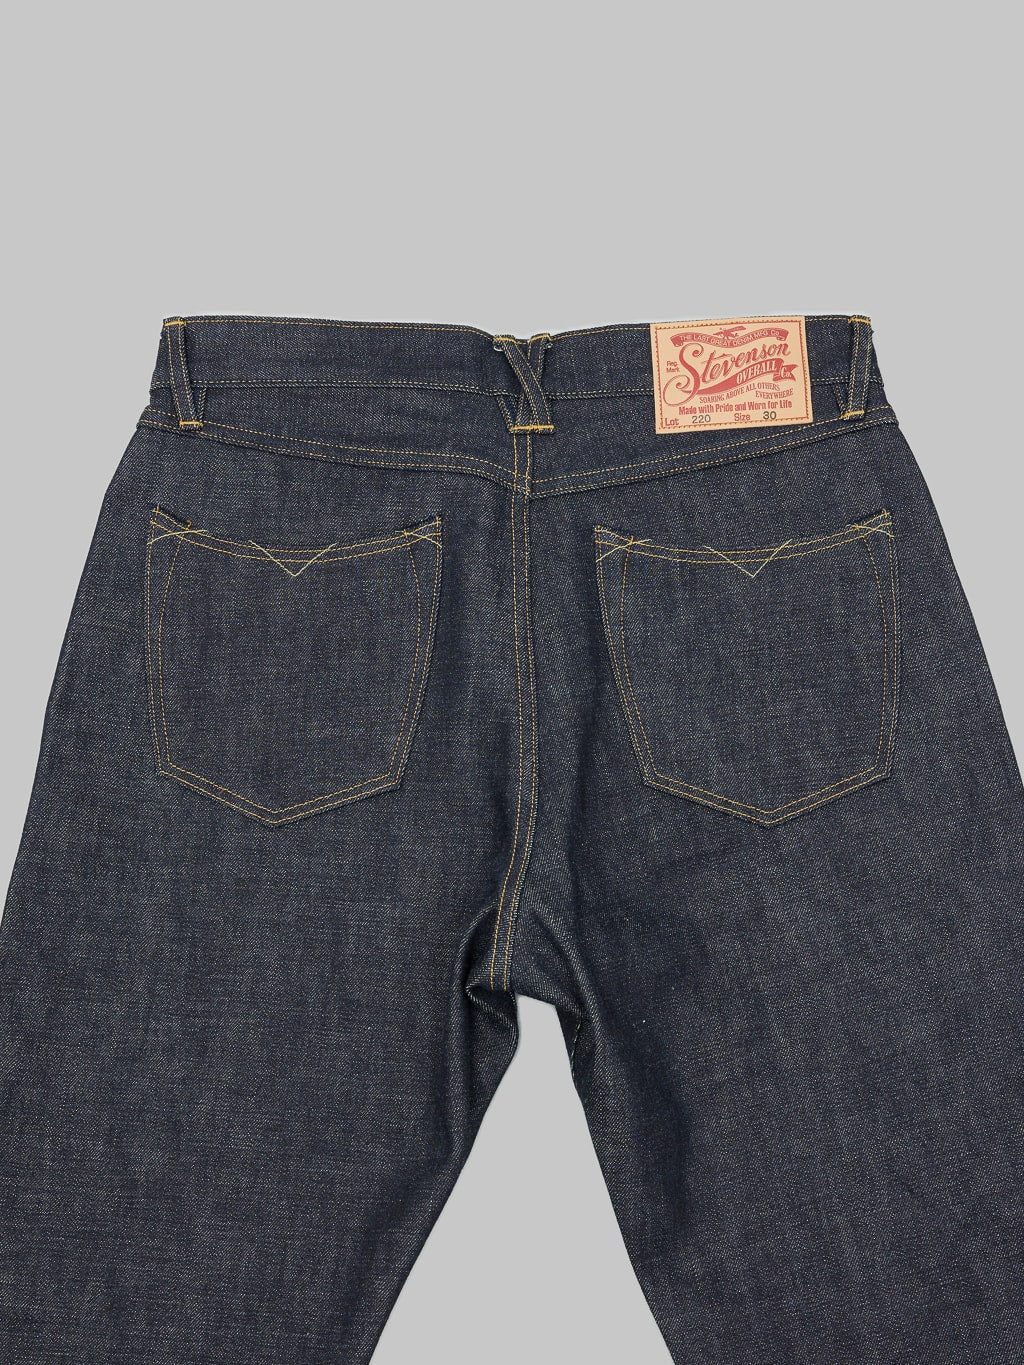 Stevenson Overall Carmel 220 Regular Tapered Jeans back pockets detail